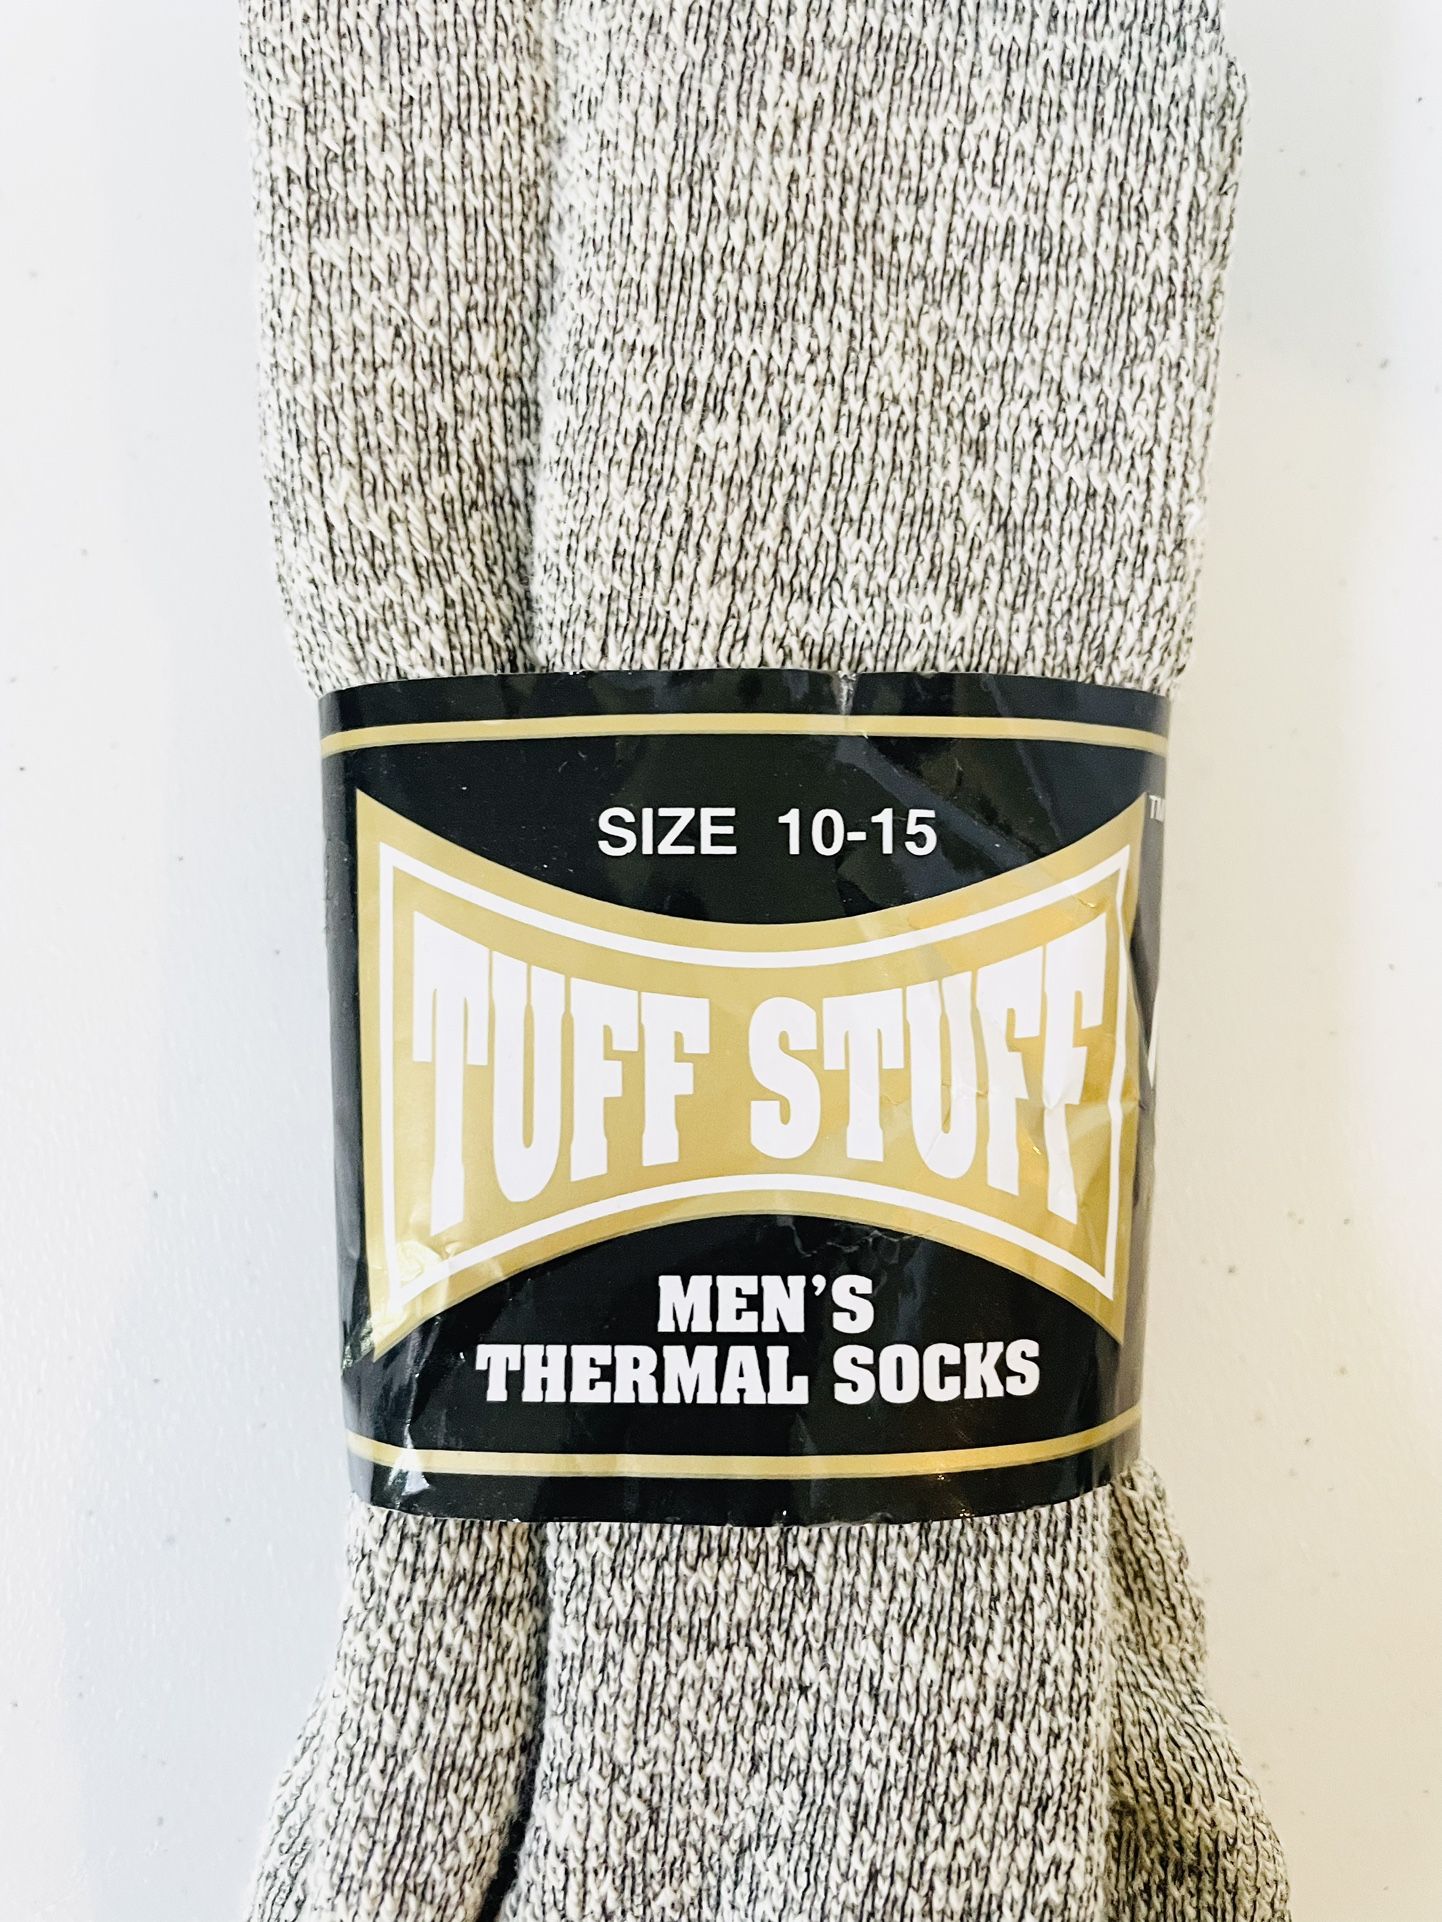 TUFF STUFF Men’s Thermal Socks, 1 Pair, Size 10-15, NWT